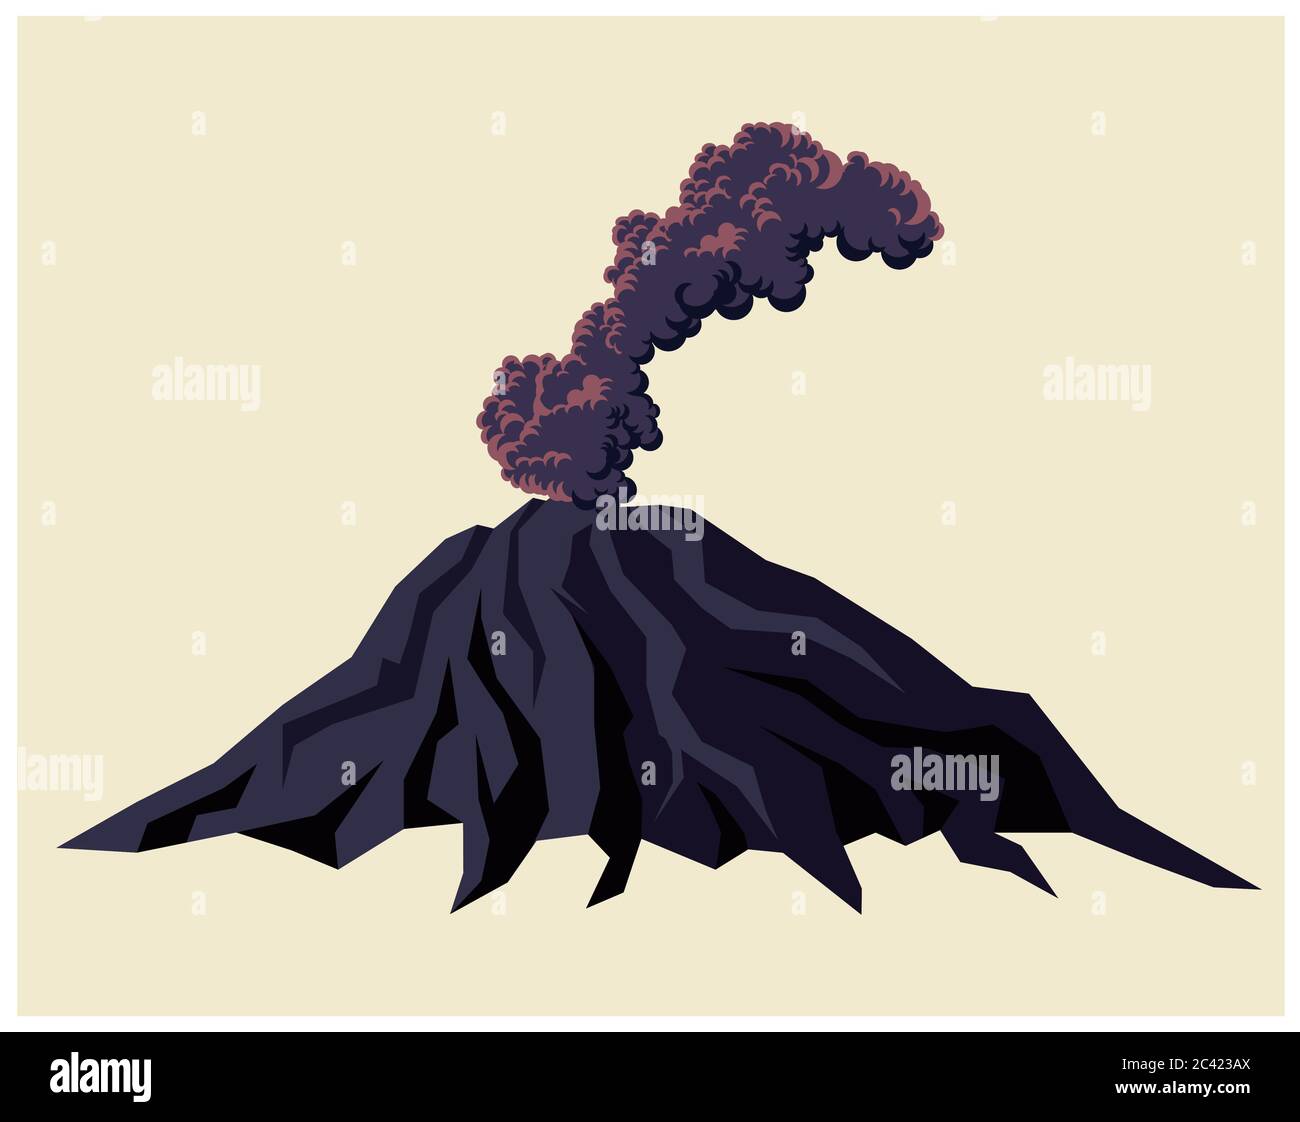 Ilustración estilizada de un volcán fumador con nubes negras de humo Ilustración del Vector